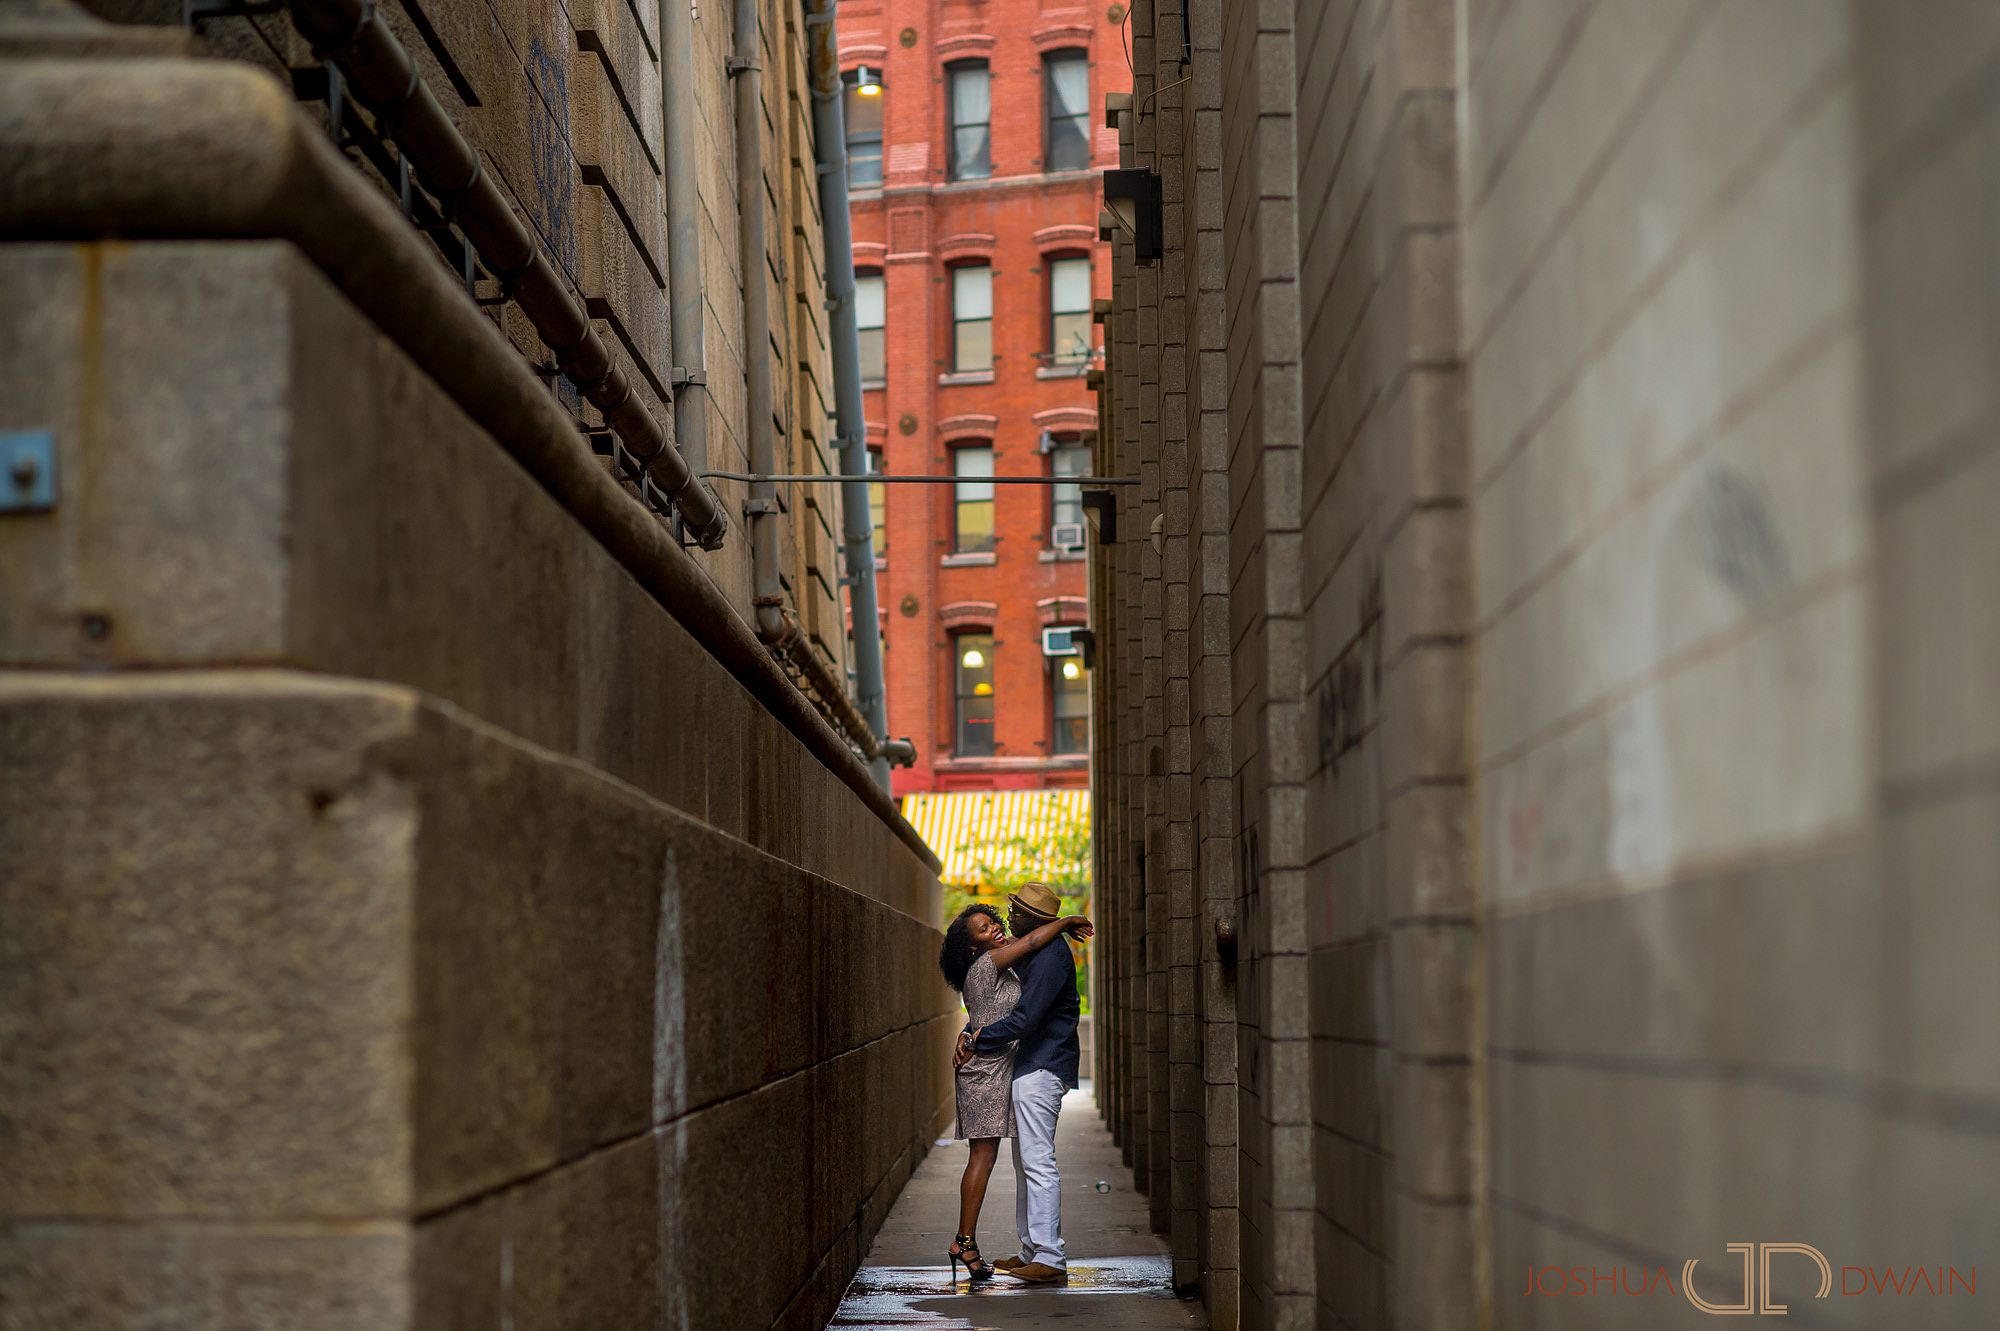 Kimberly & David's engagement in Dumbo, Brooklyn, NY